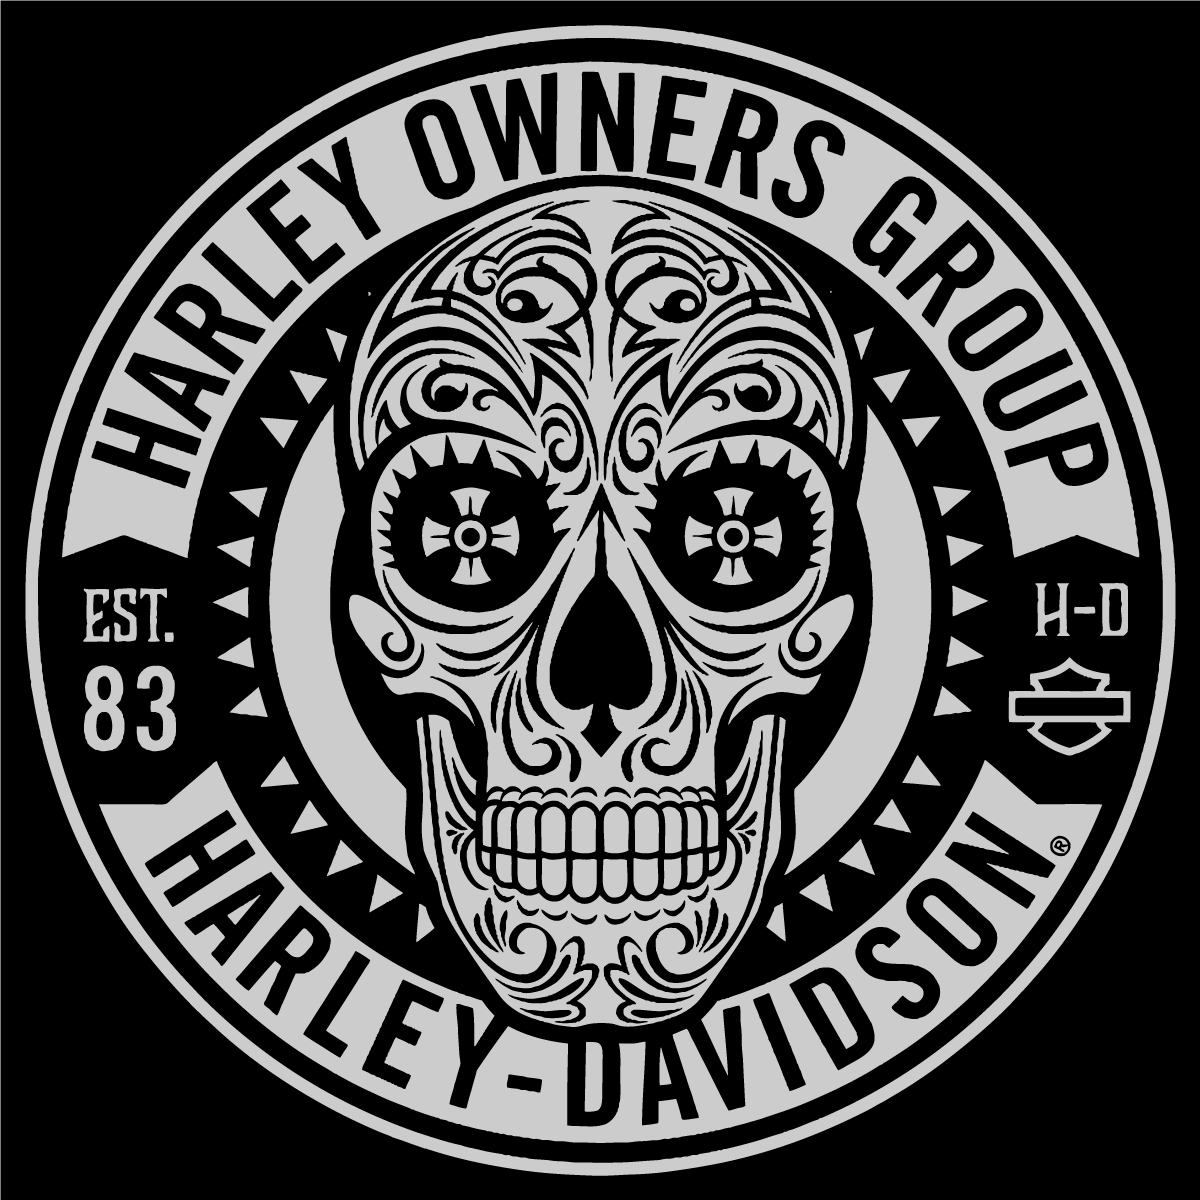 Harley-Davidson Skull Logo - Unique Harley Davidson Owners Group Skull Logo Vector Patch Sticker